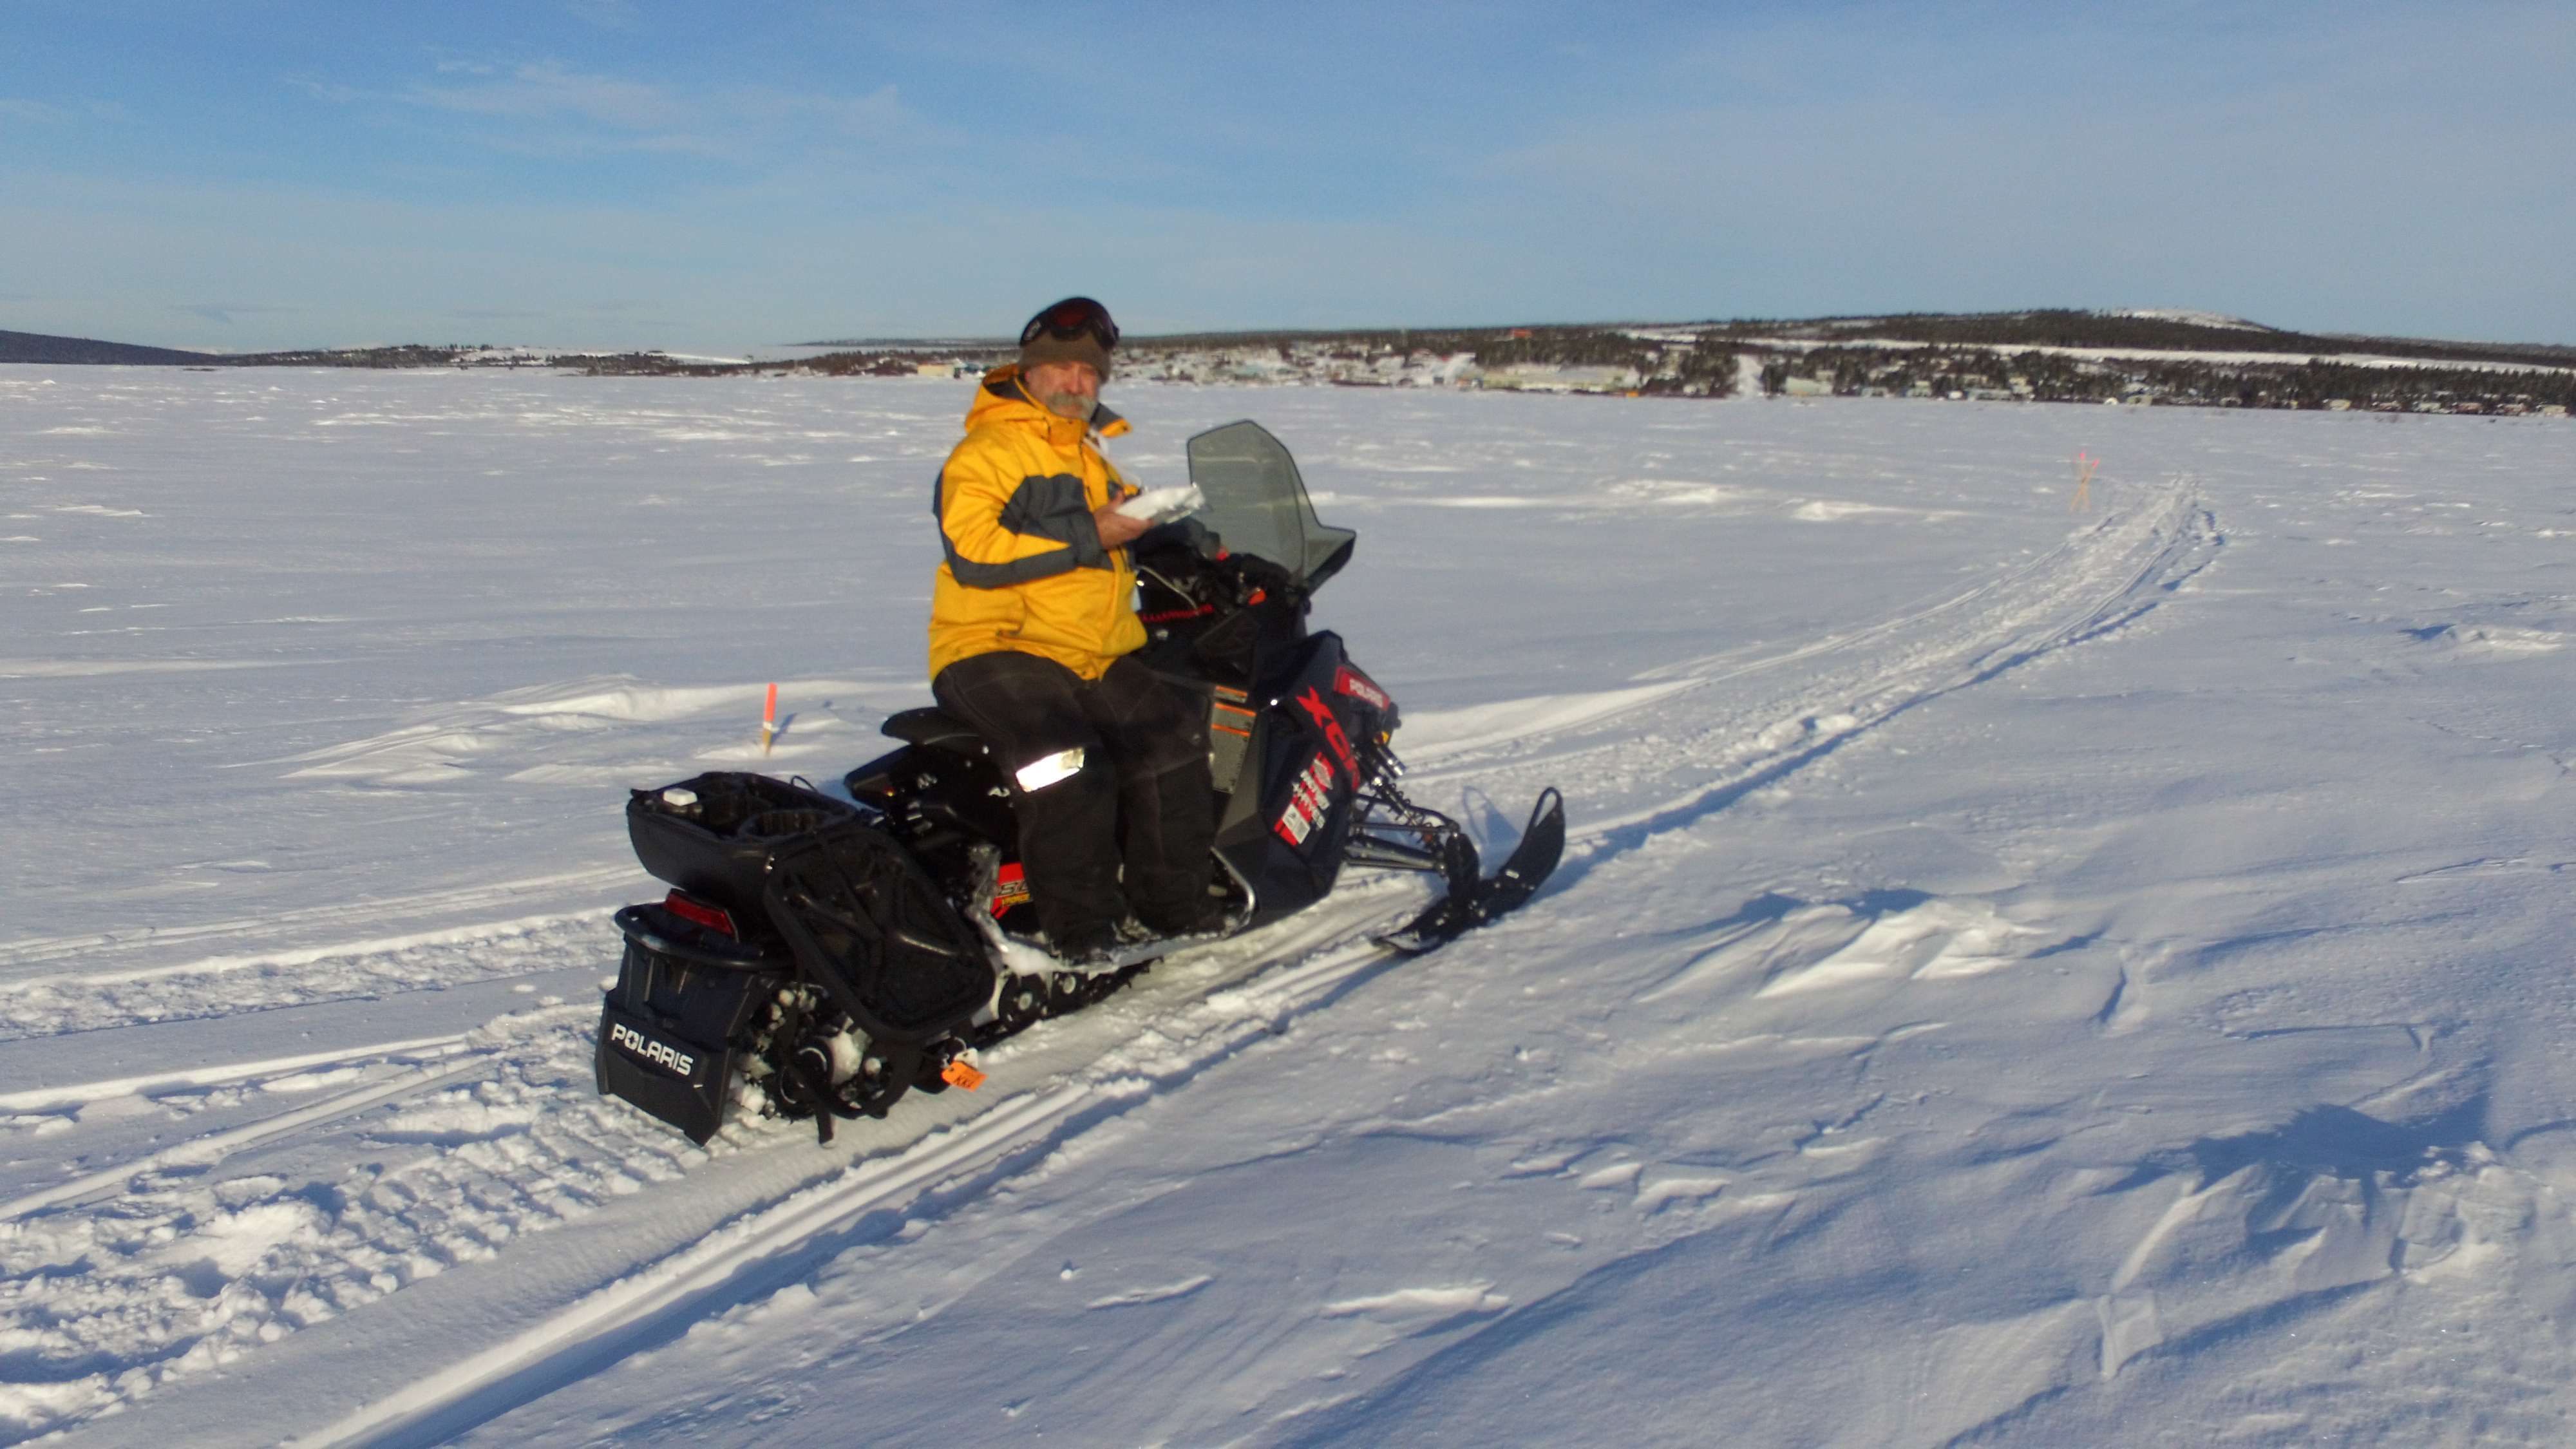 I rode a snowmobile onto the frozen ocean to take the Koyuk shot.